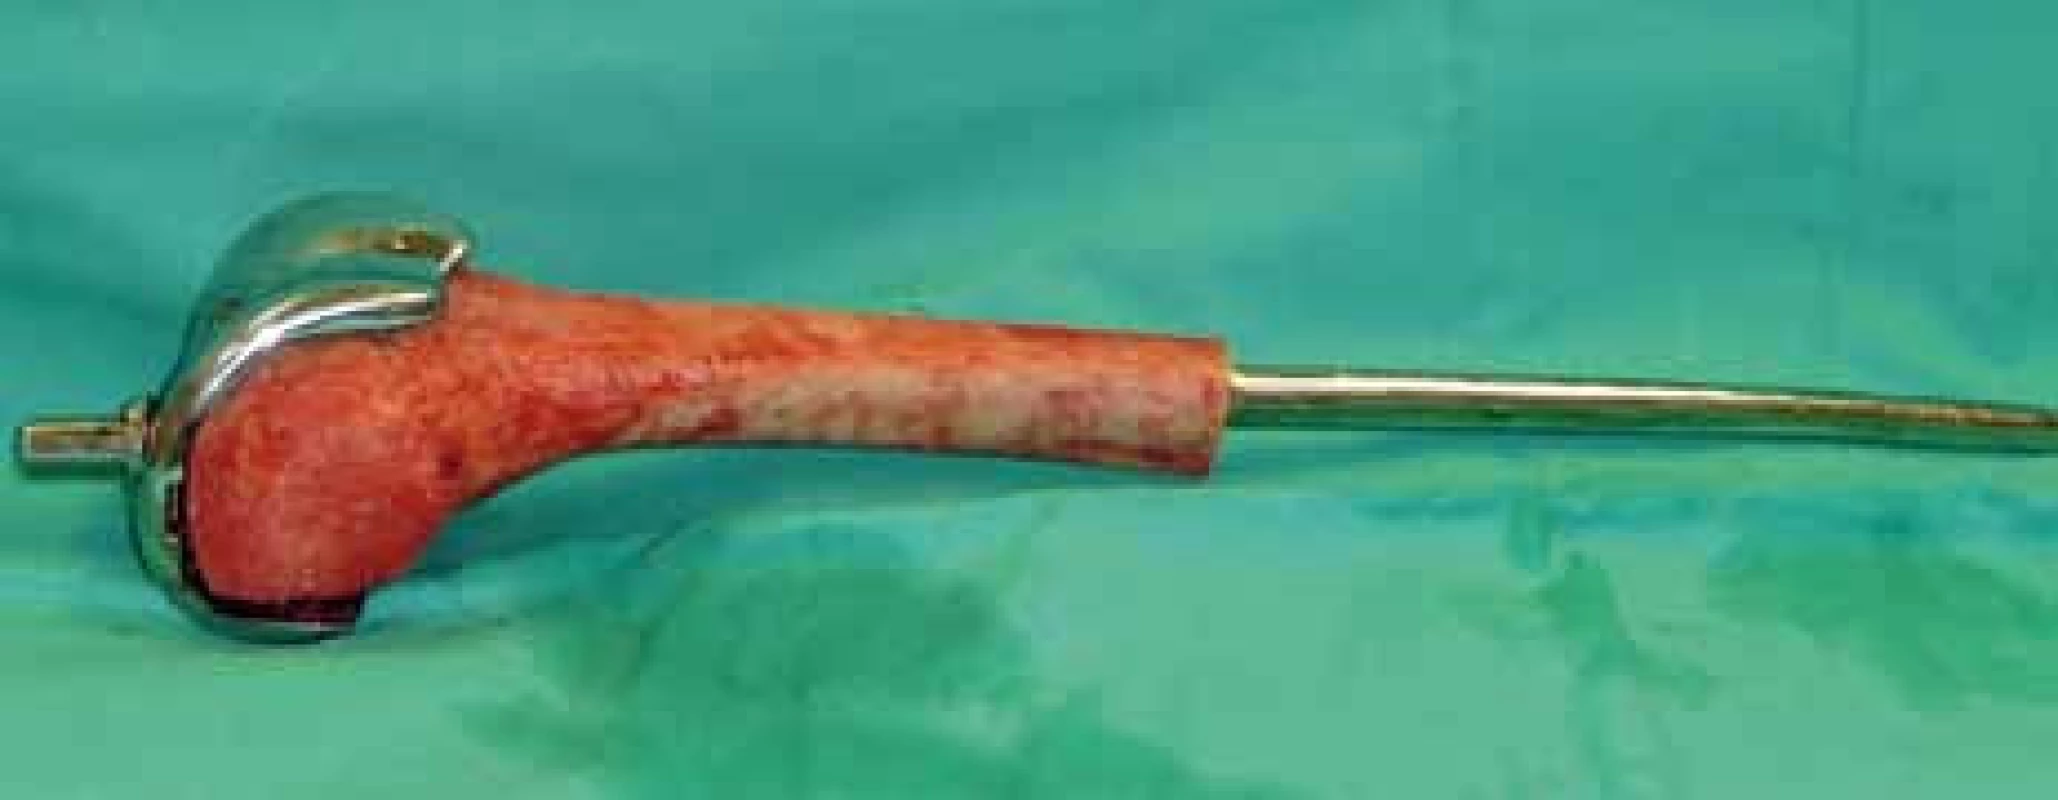 Peroperační foto – femorální část kompozitní endoprotézy (homoštěp distálního femuru + femorální komponenta) na instrumentačním stolku.